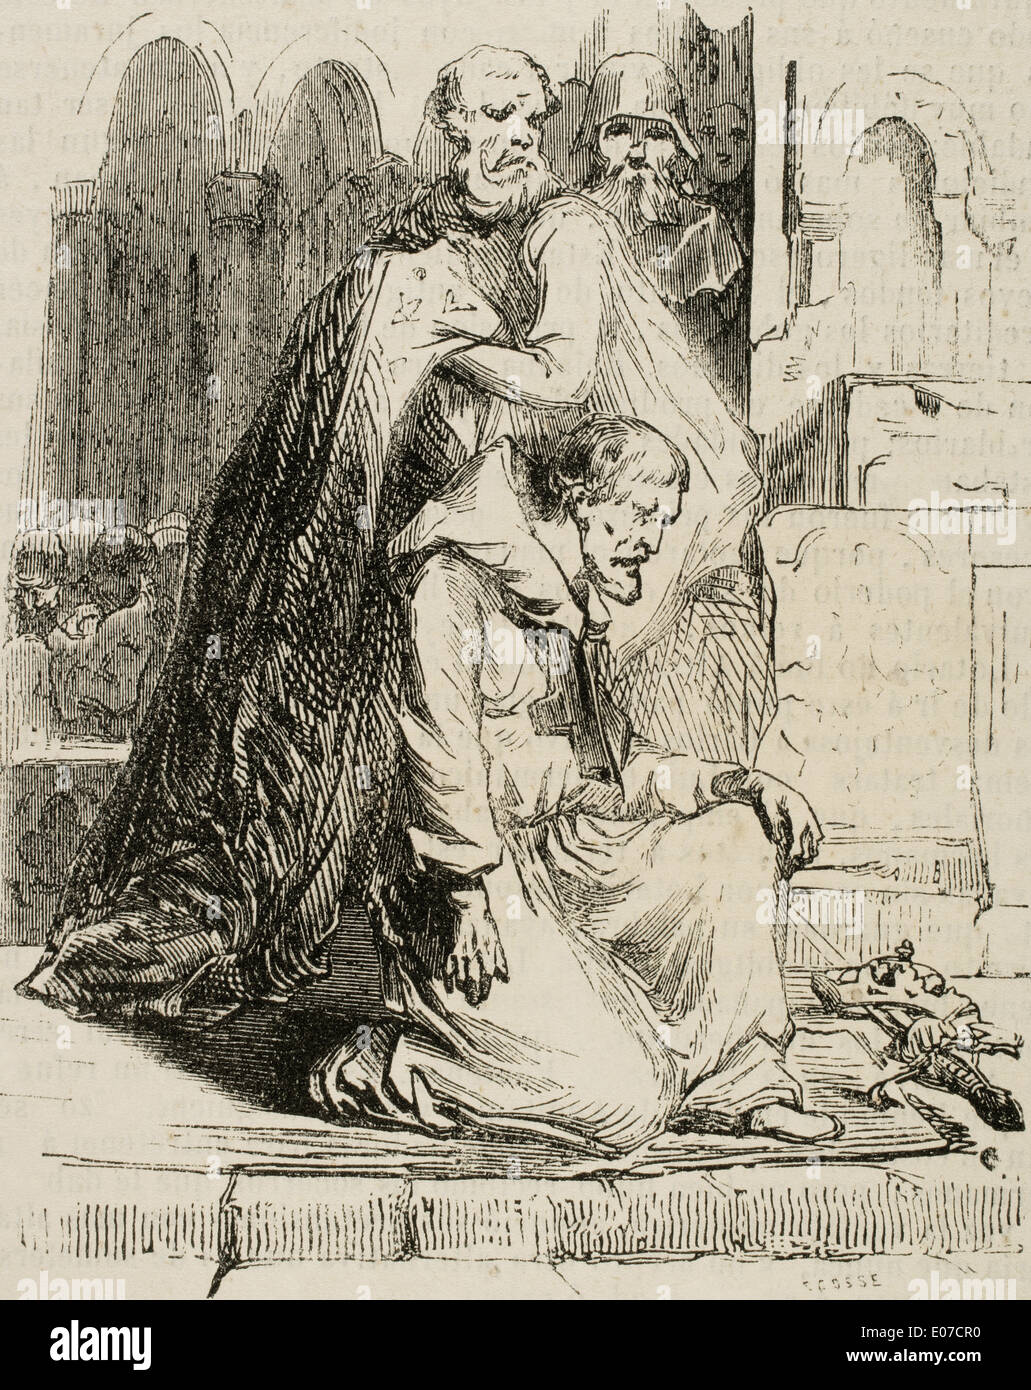 Ludwig der fromme (778-840). König von Aquitanien und der Franken. Kupferstich von Ecosse. Universalbibliothek, beliebte Edition, 1851. Stockfoto